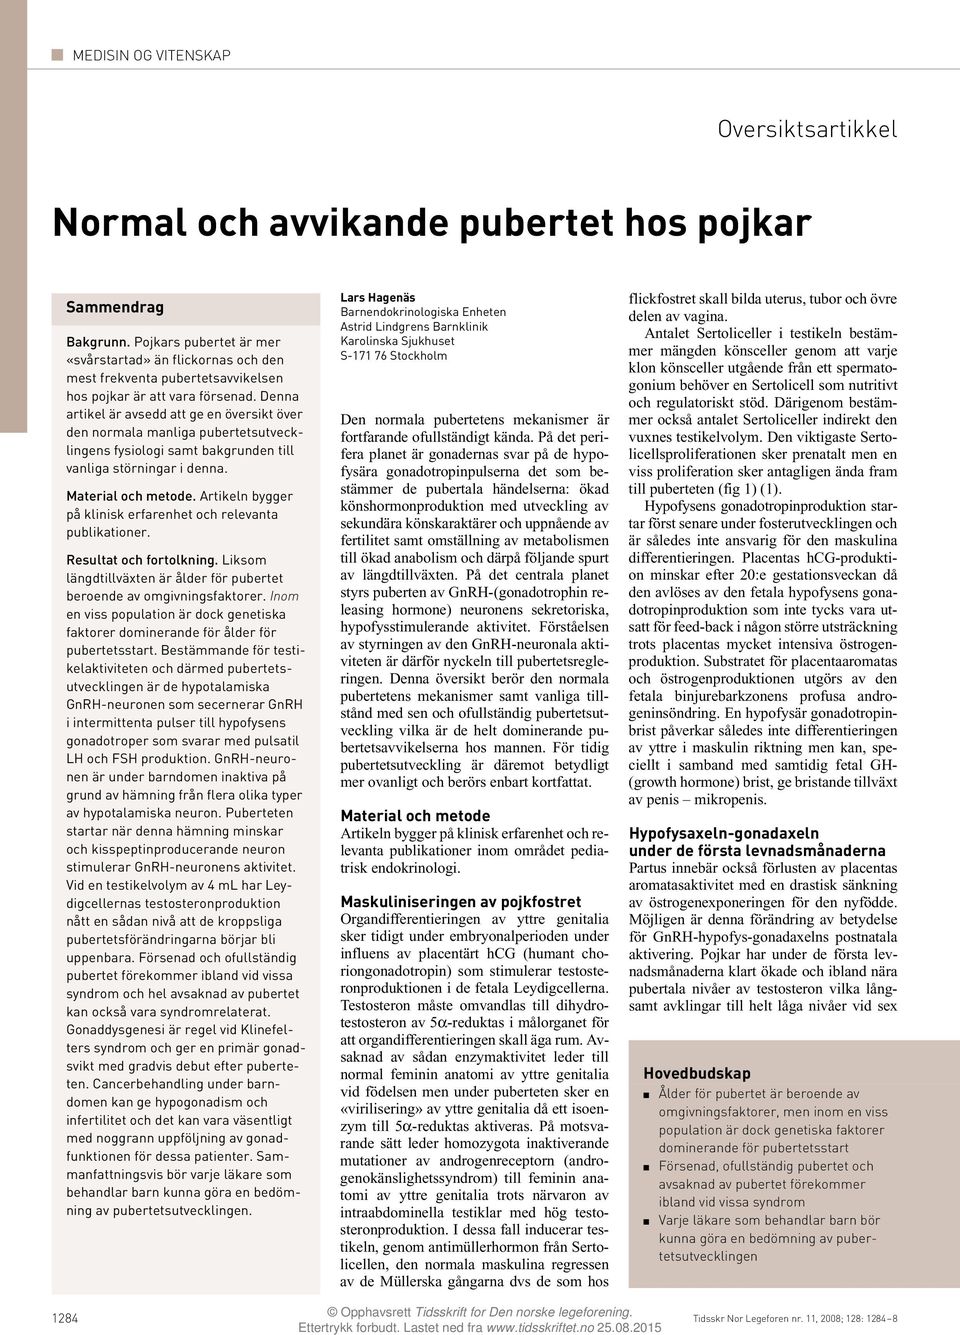 Denna artikel är avsedd att ge en översikt över den normala manliga pubertetsutvecklingens fysiologi samt bakgrunden till vanliga störningar i denna. Material och metode.